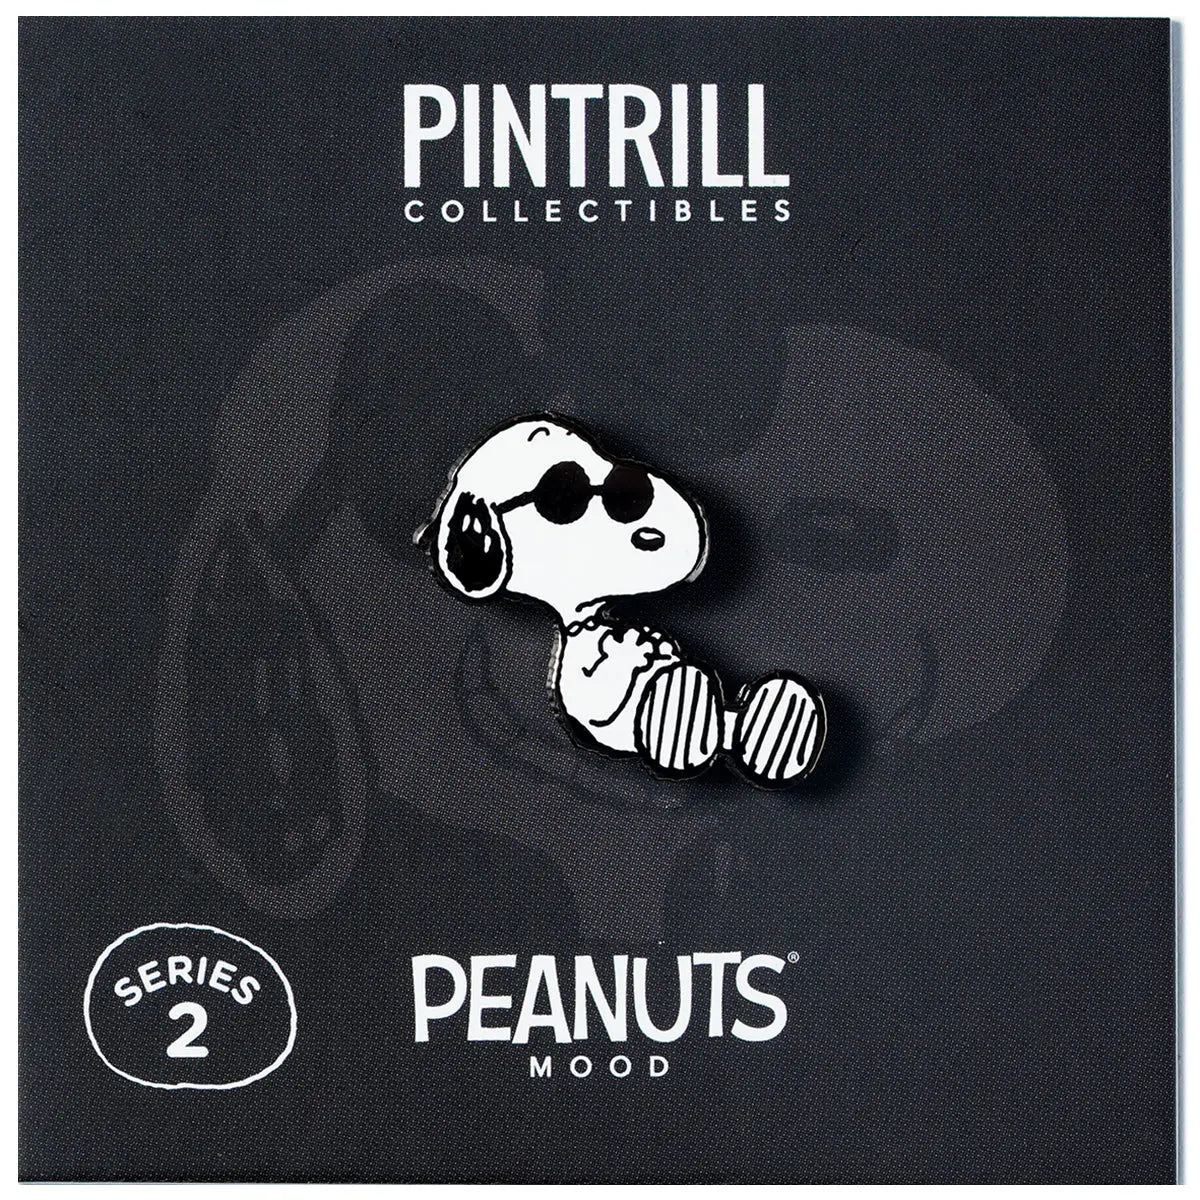 Peanuts Mood - Vibin' Joe Pin